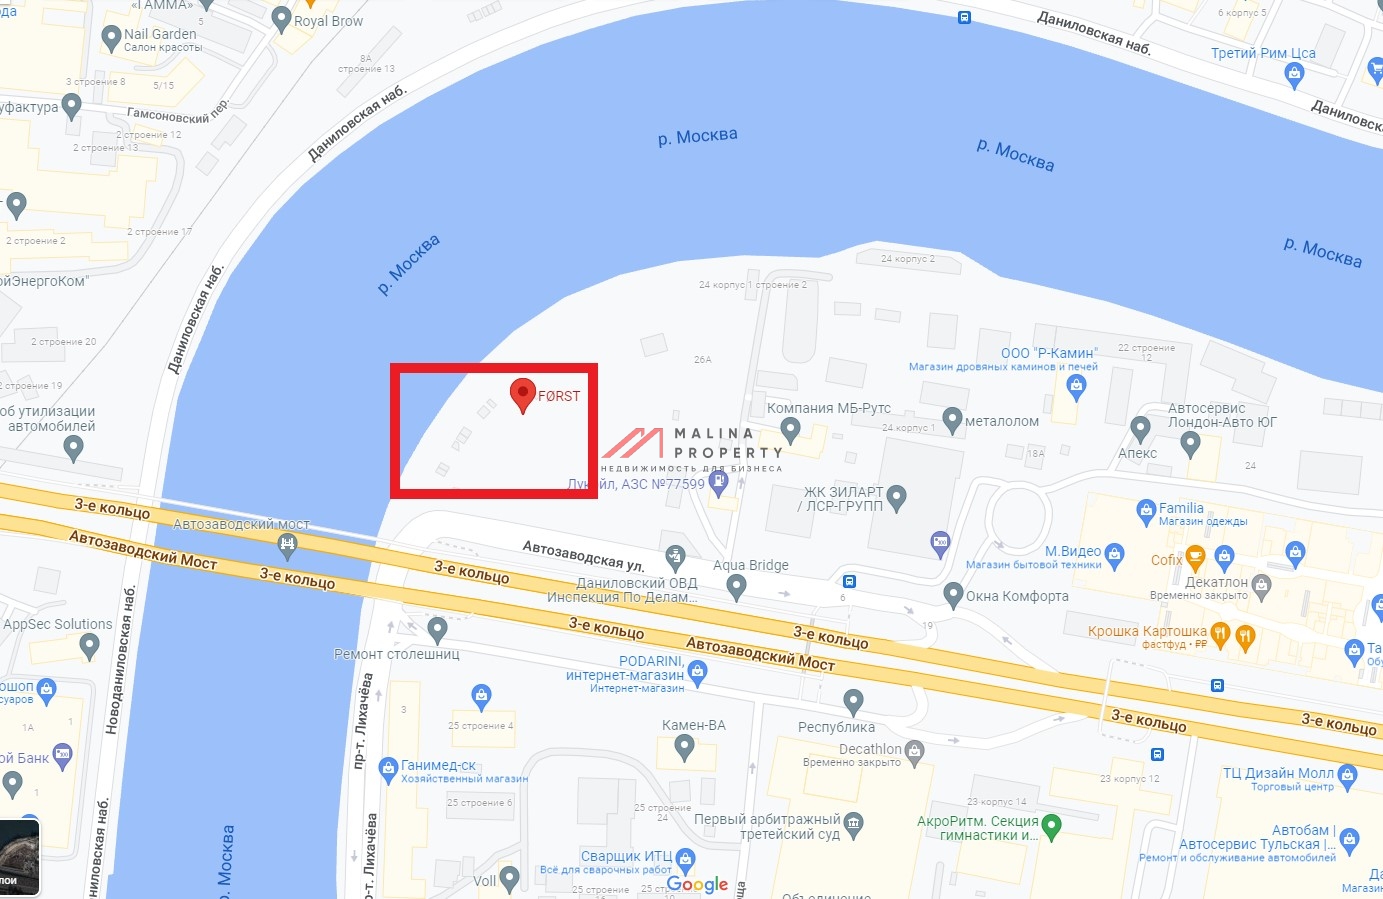 Продажа торгового помещения в ЖК "Форст" на Симоновской набережной